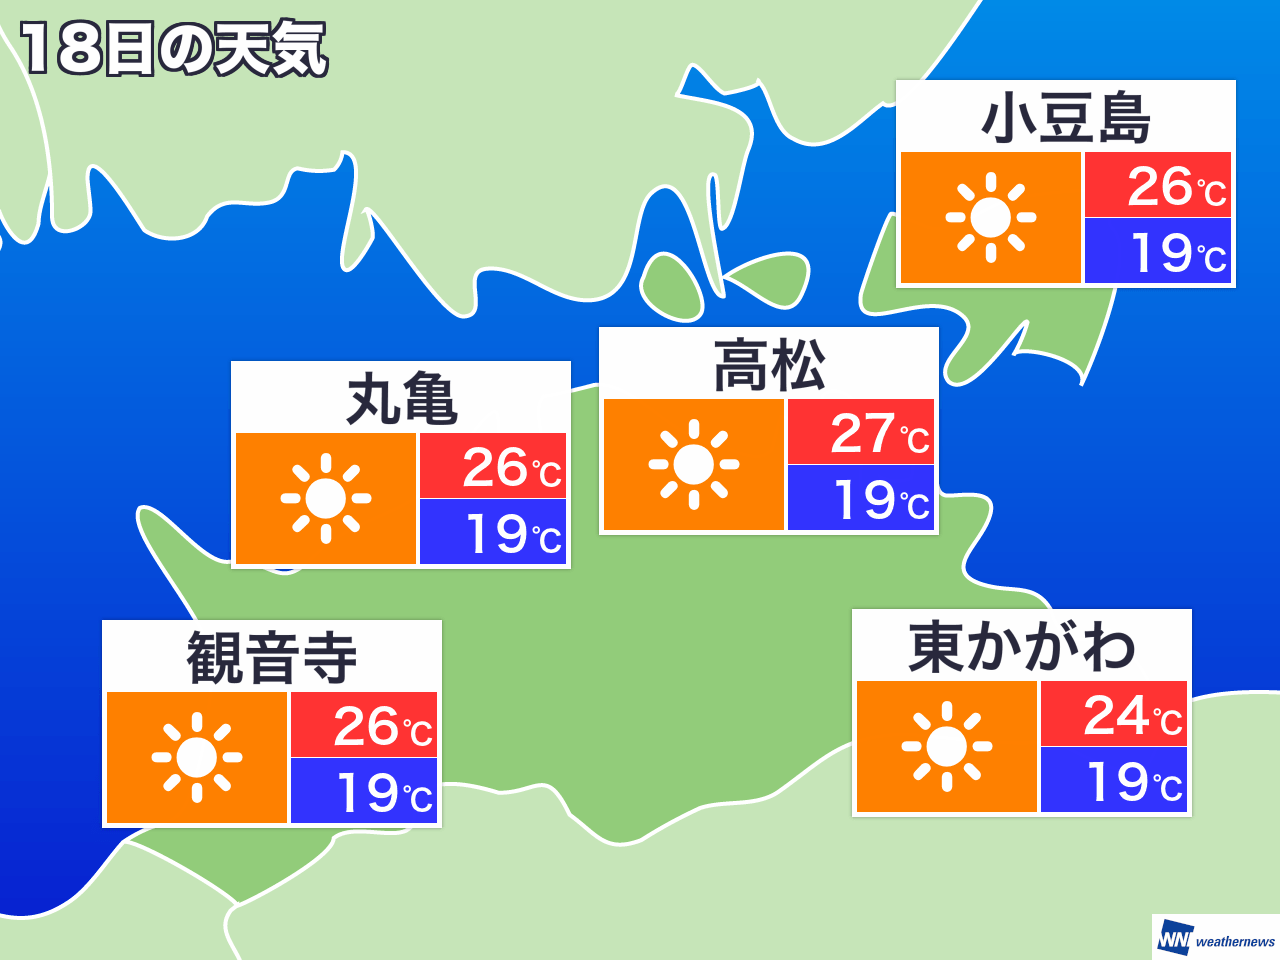 3月6日 水 香川県の今日の天気 ウェザーニュース